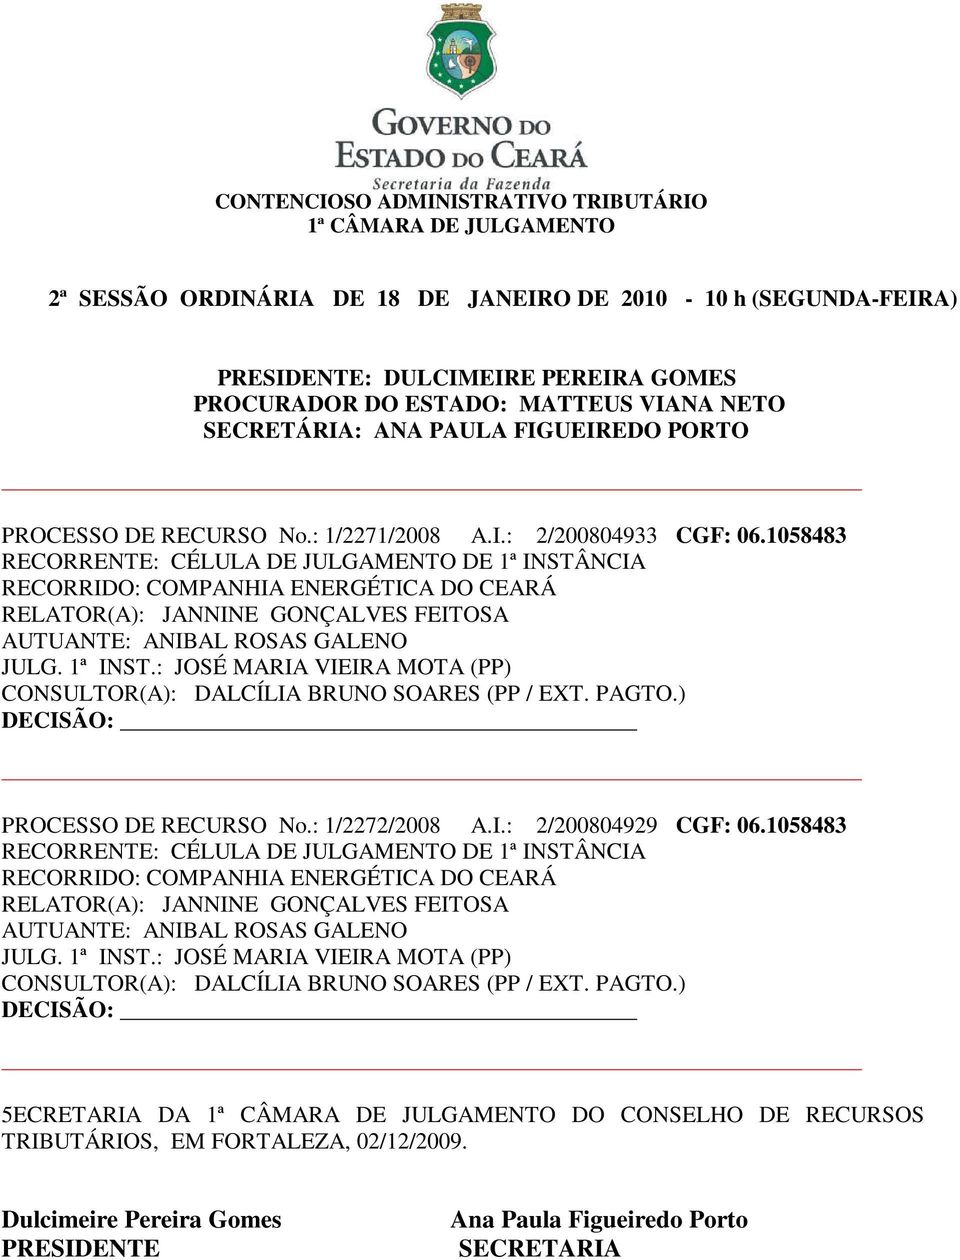 : JOSÉ MARIA VIEIRA MOTA (PP) CONSULTOR(A): DALCÍLIA BRUNO SOARES (PP / EXT. PAGTO.) PROCESSO DE RECURSO No.: 1/2272/2008 A.I.: 2/200804929 CGF: 06.